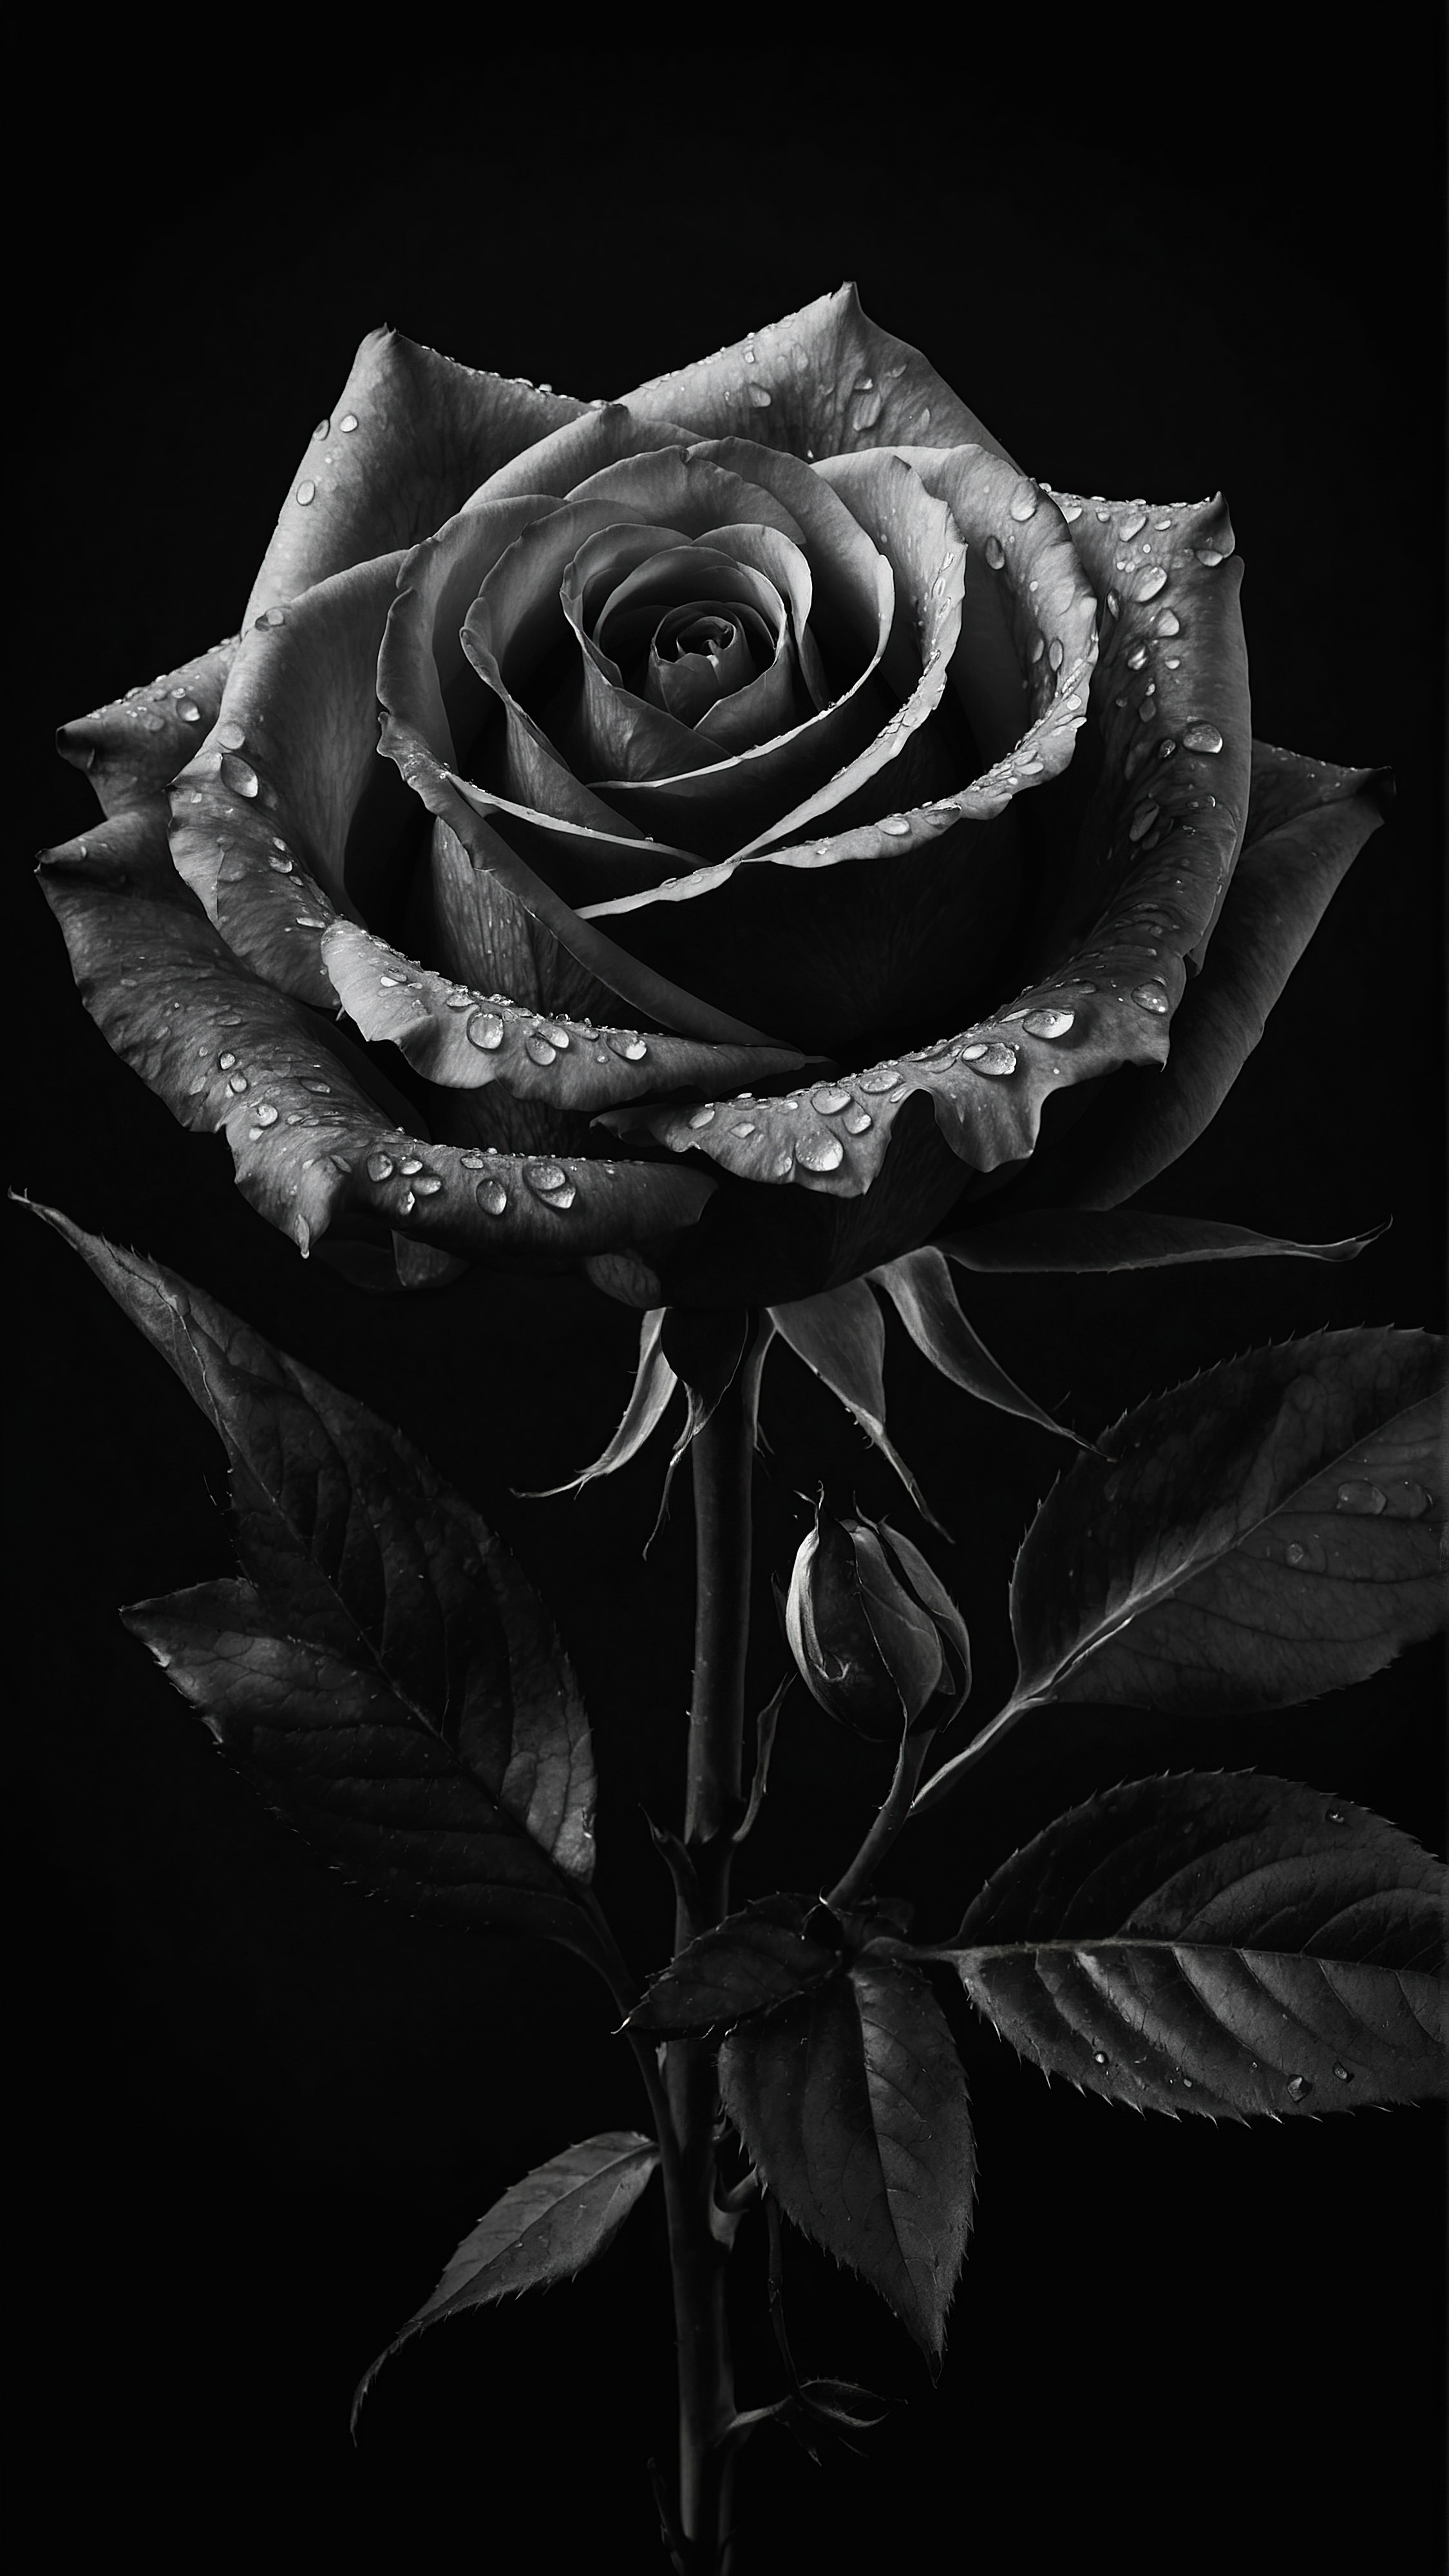 Appréciez l'élégance d'une rose aux détails complexes, sur un fond sombre, à travers notre fond d'écran esthétique noir pour iPhone en 4K gratuit.